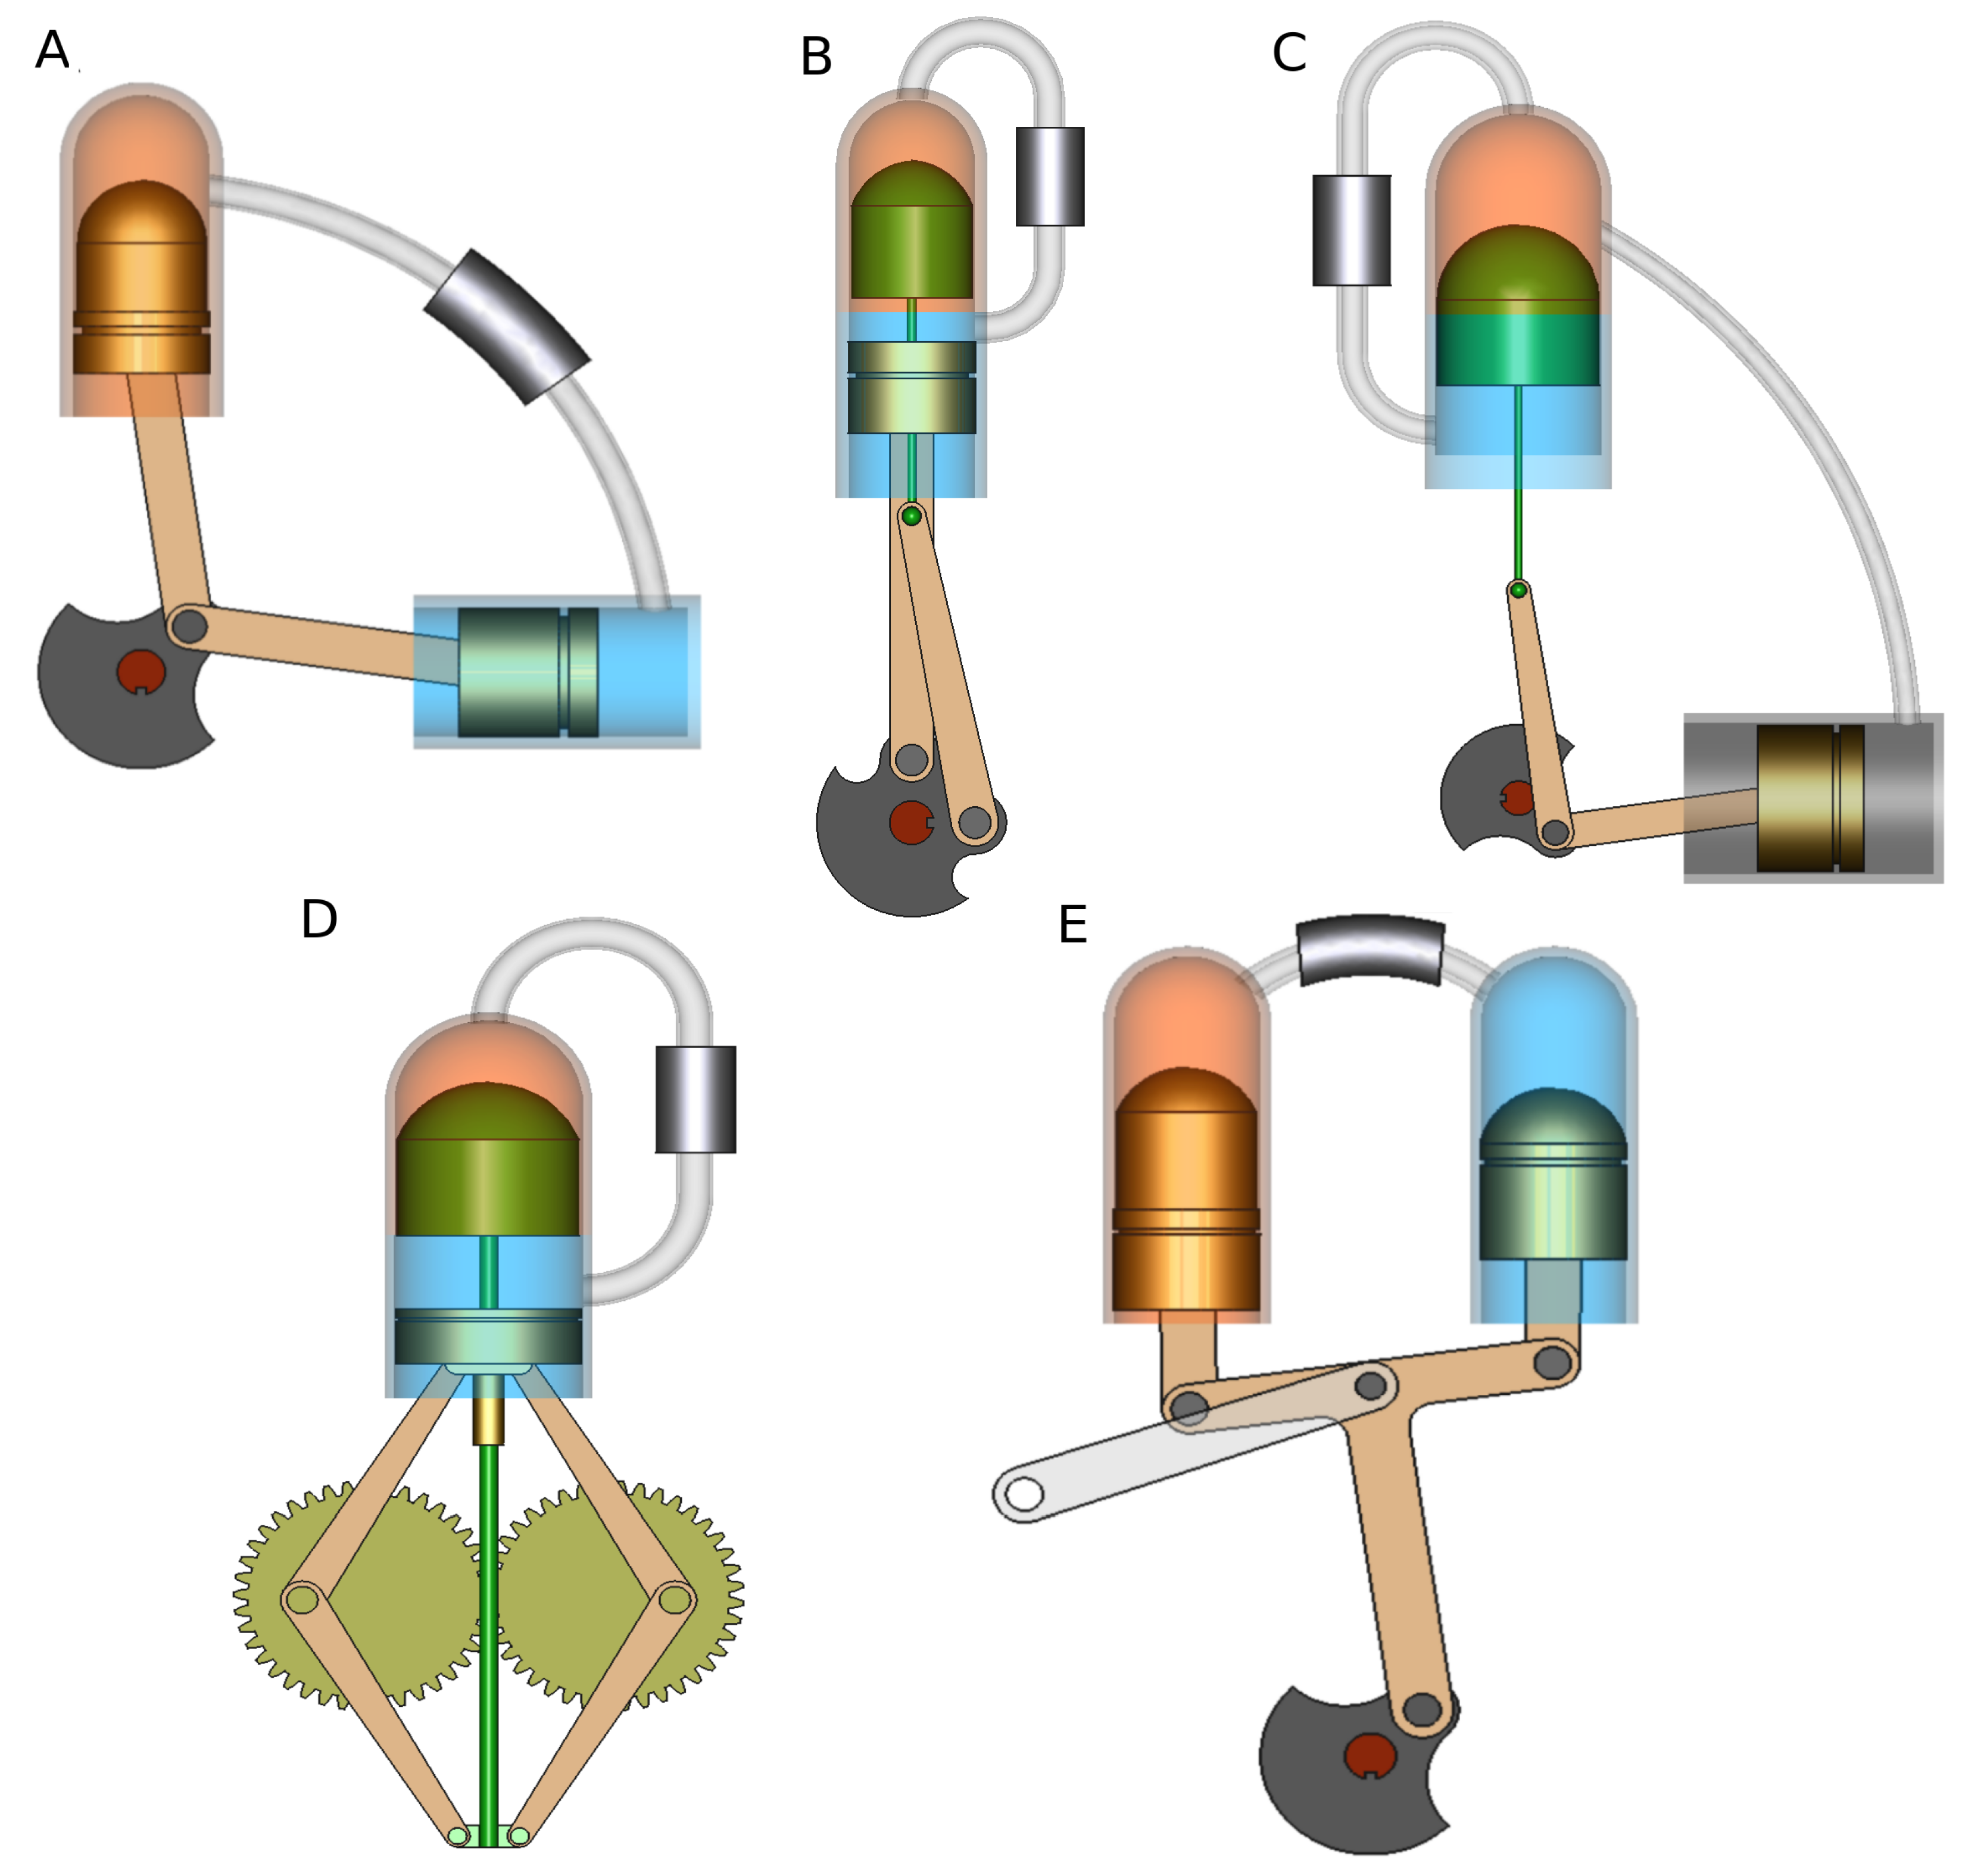 engine animated gif image  Mechanical design, Engineering, Stirling engine